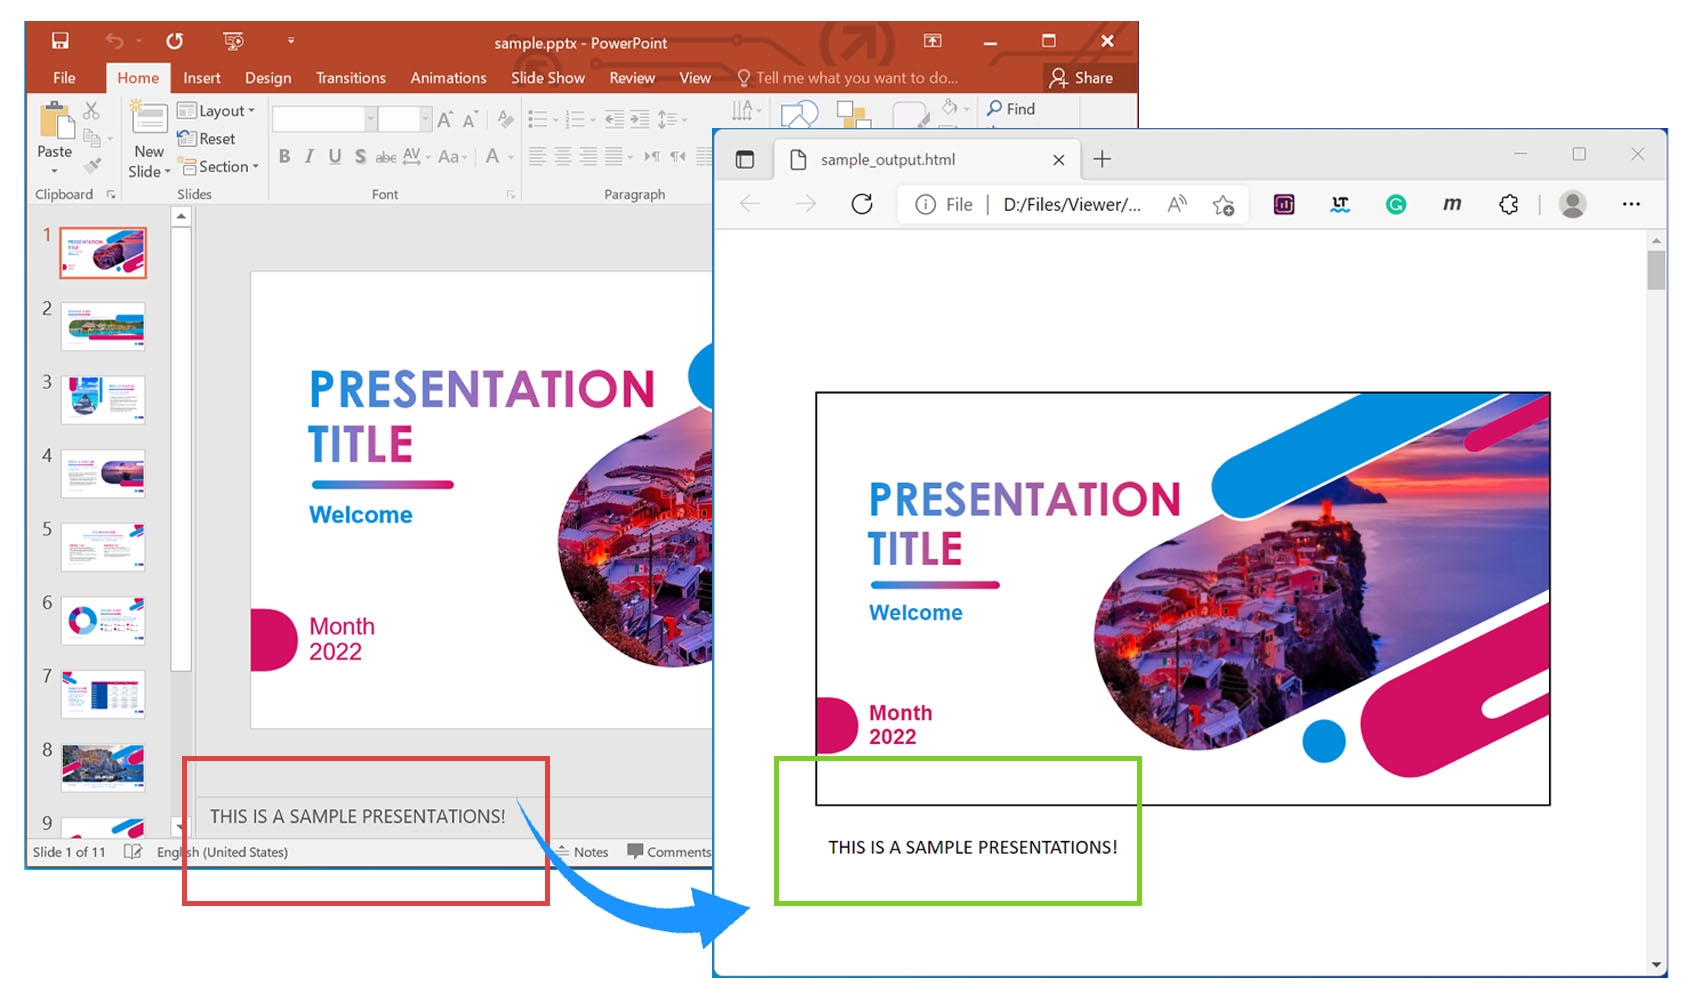 Renderize notas de apresentação do PowerPoint em HTML usando C#.